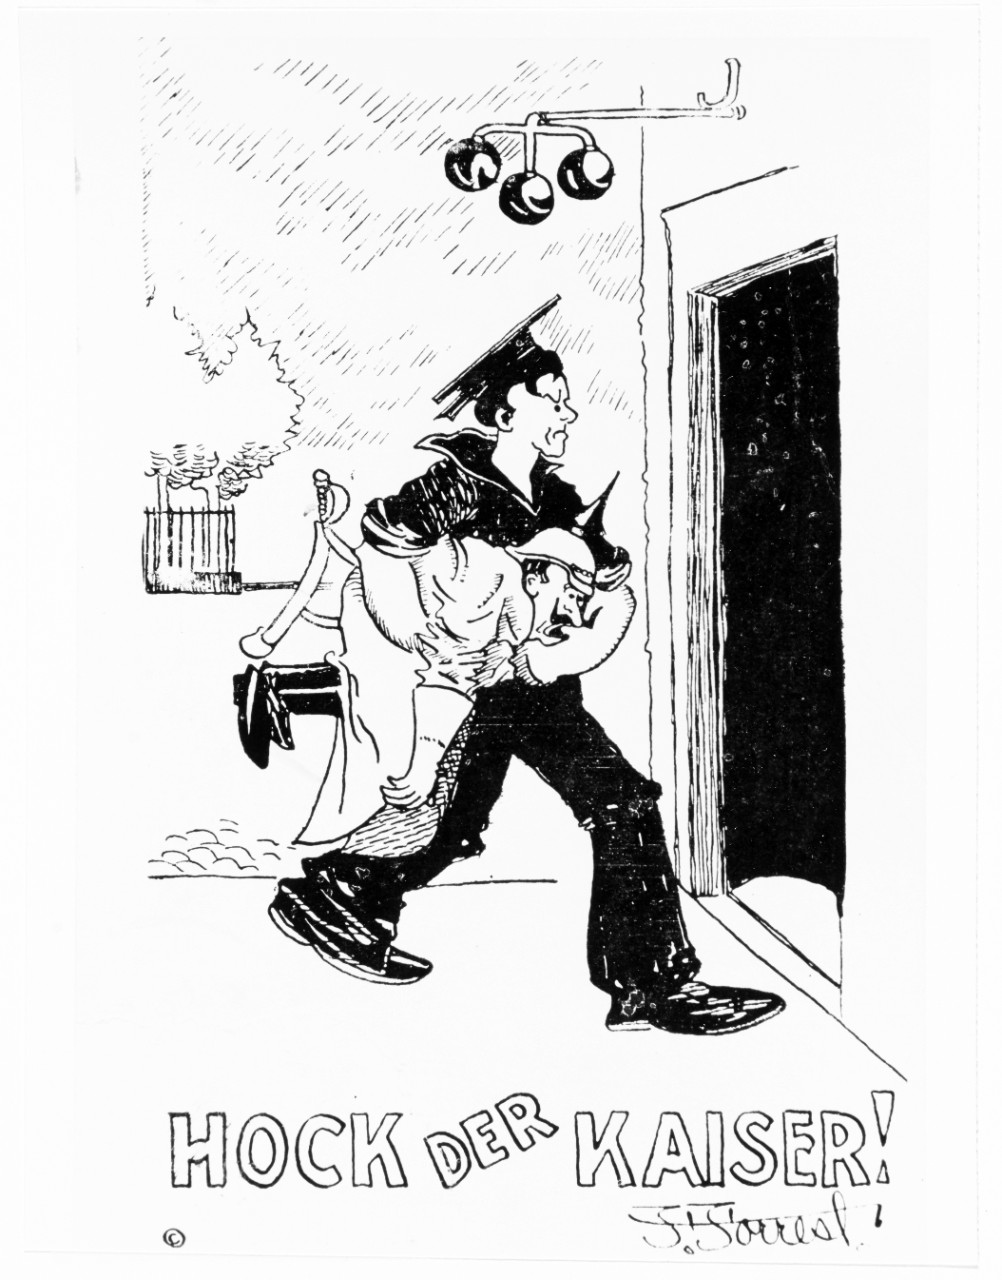 "Hock der Kaiser!" postcard cartoon by F. Forrest